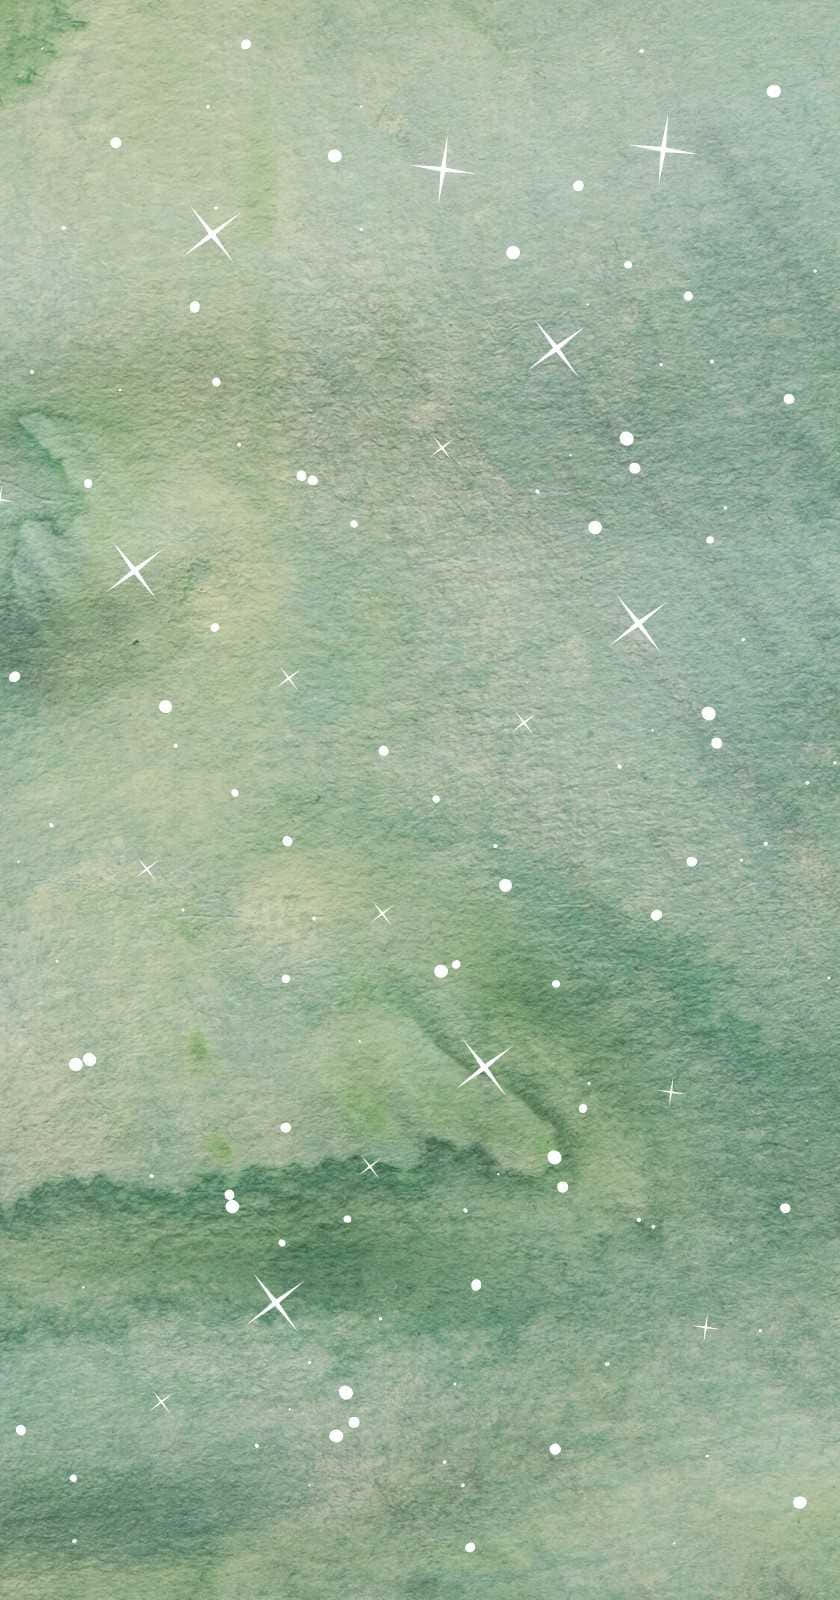 Enakvarellmålning Av Stjärnor Och Grönt